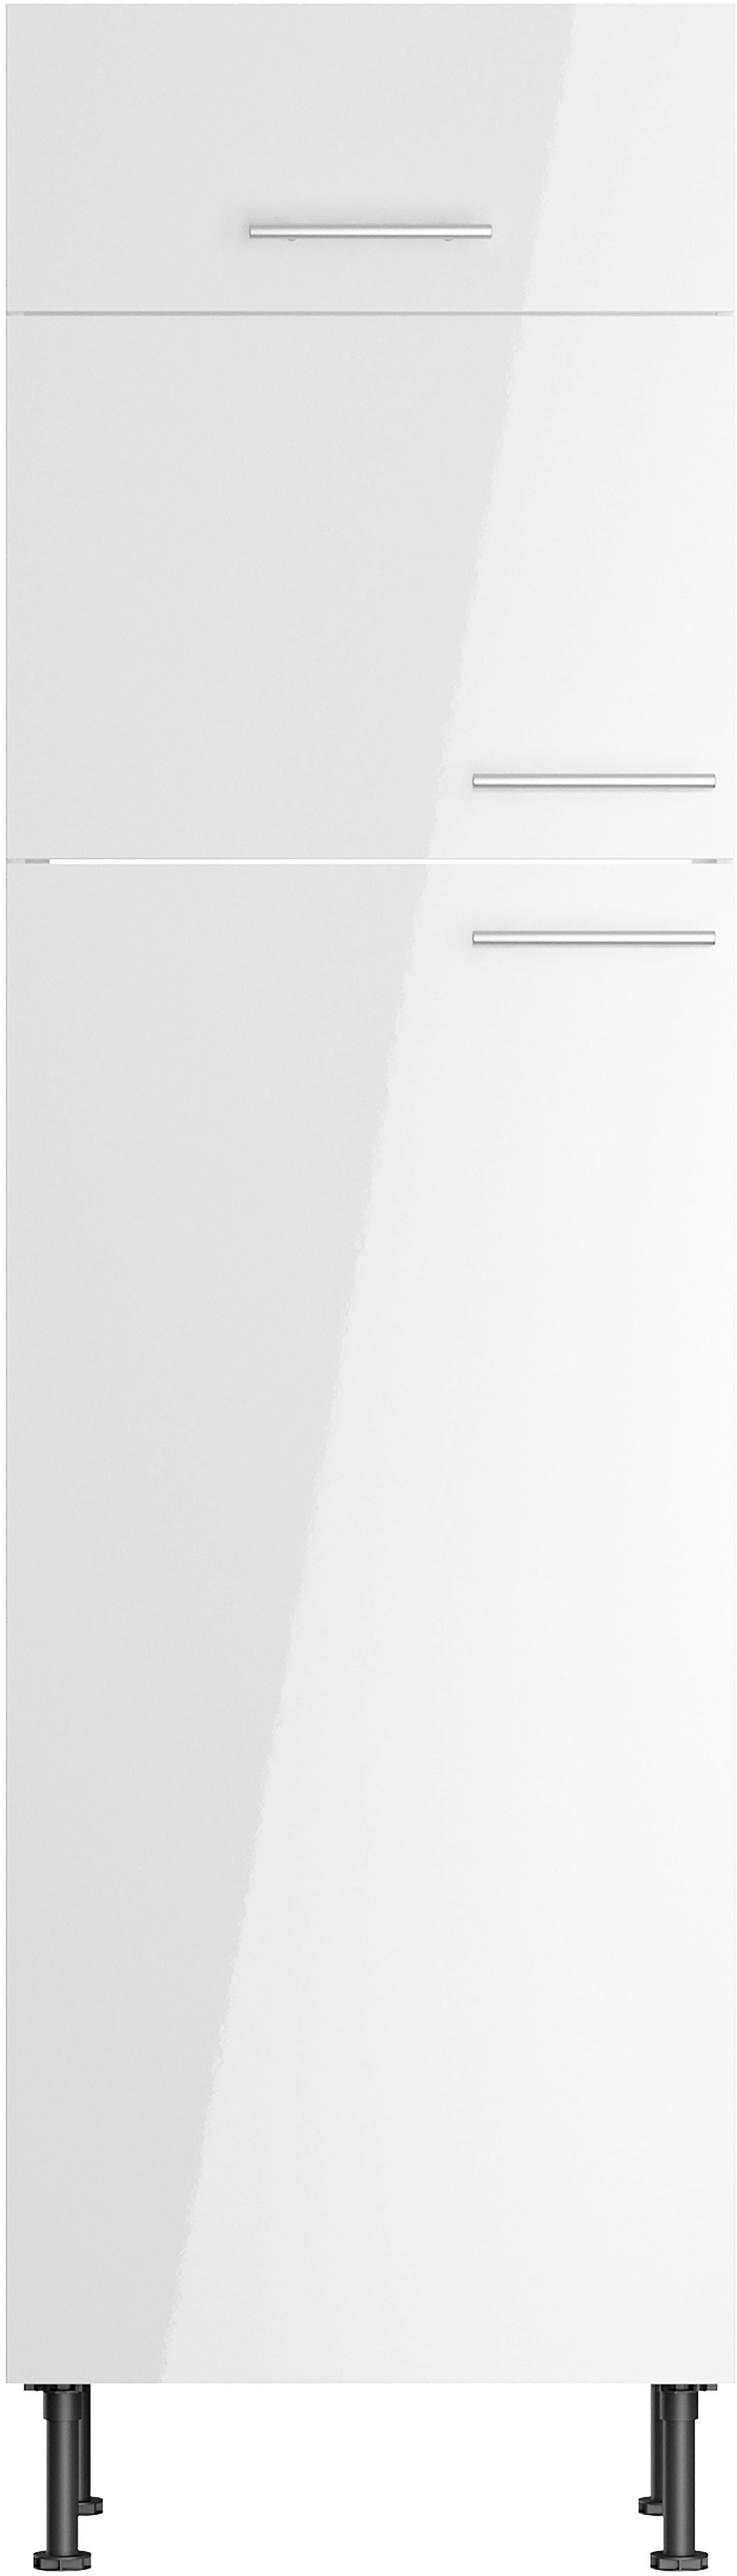 60 cm Klara weiß Kühlumbauschrank OPTIFIT lackiert/weiß Breite